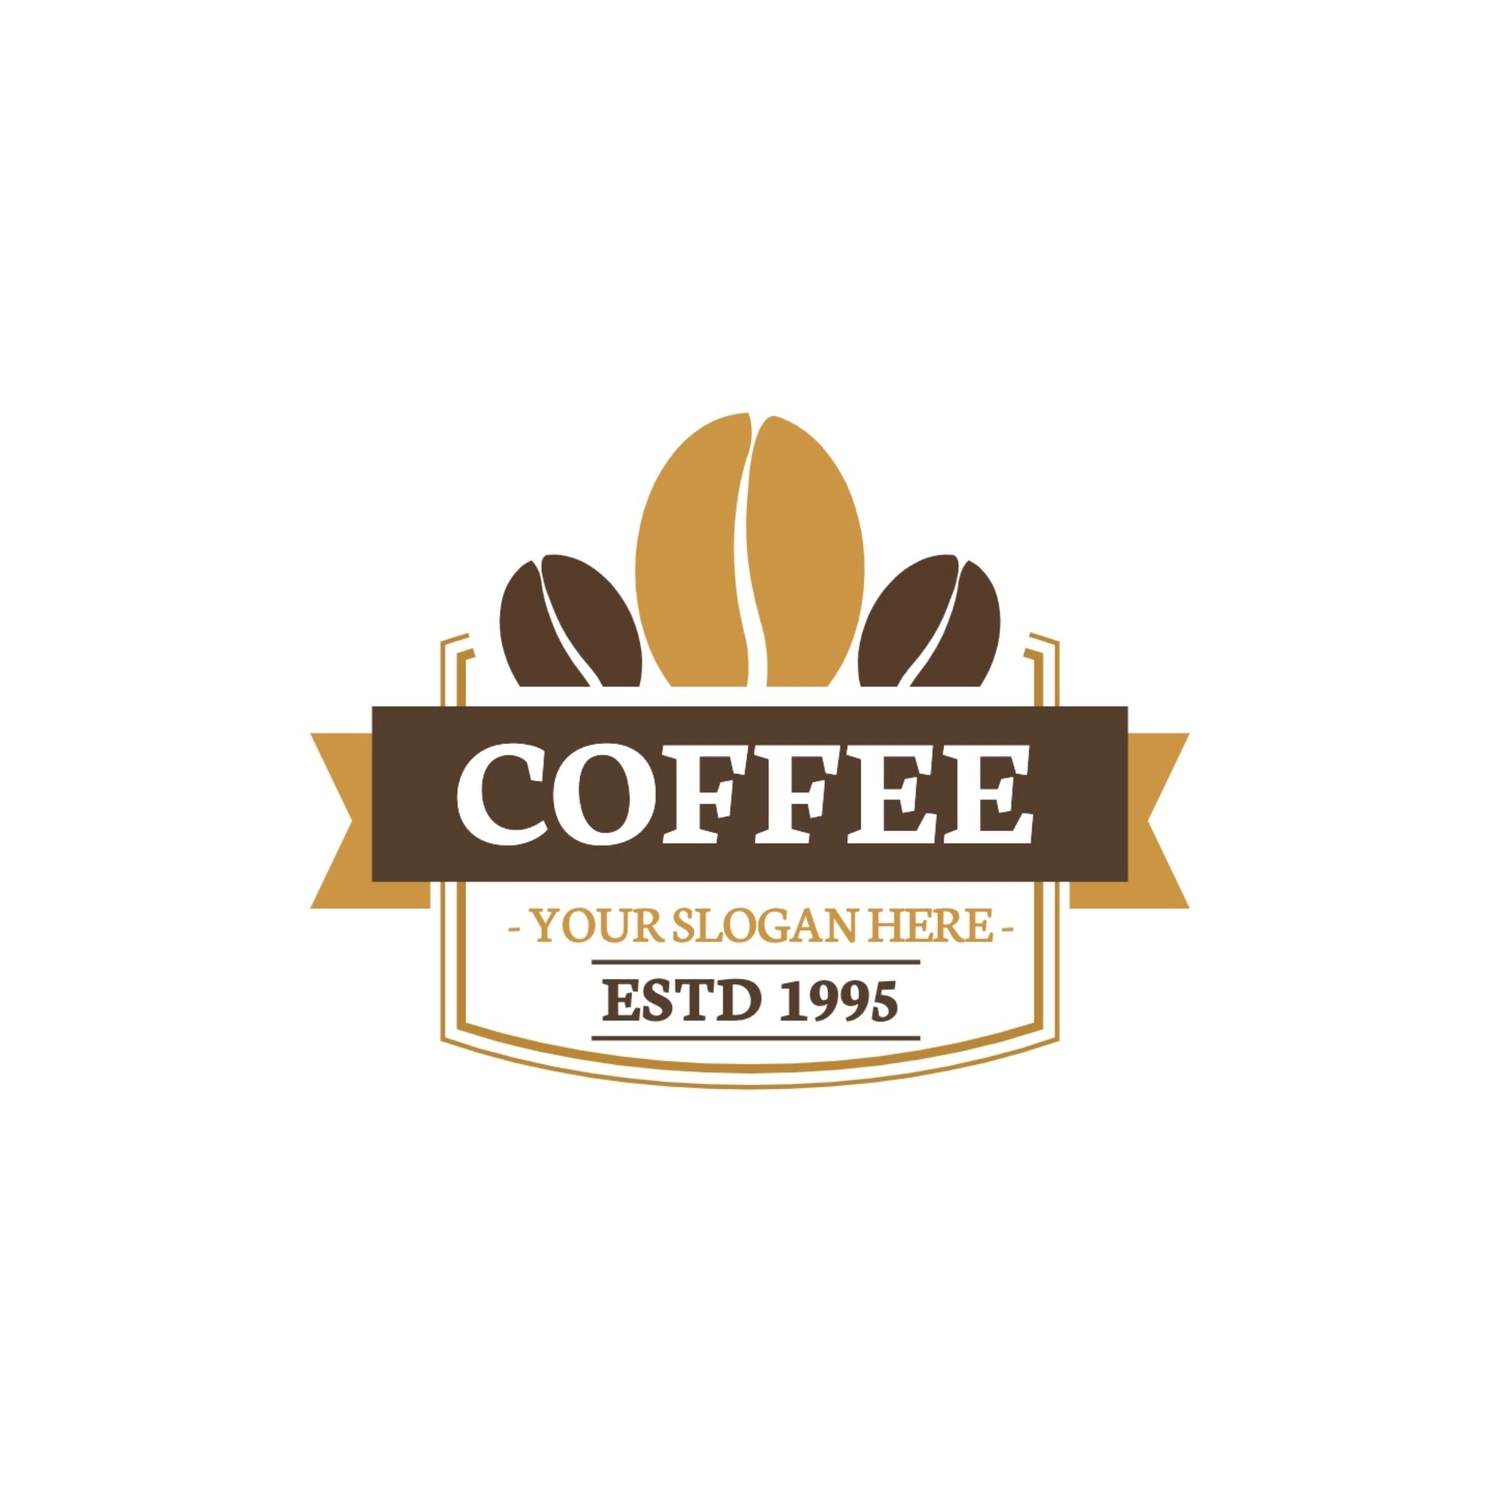 コーヒーショップのロゴ, ロゴ, ロゴマーク, ロゴタイプ, ロゴテンプレート